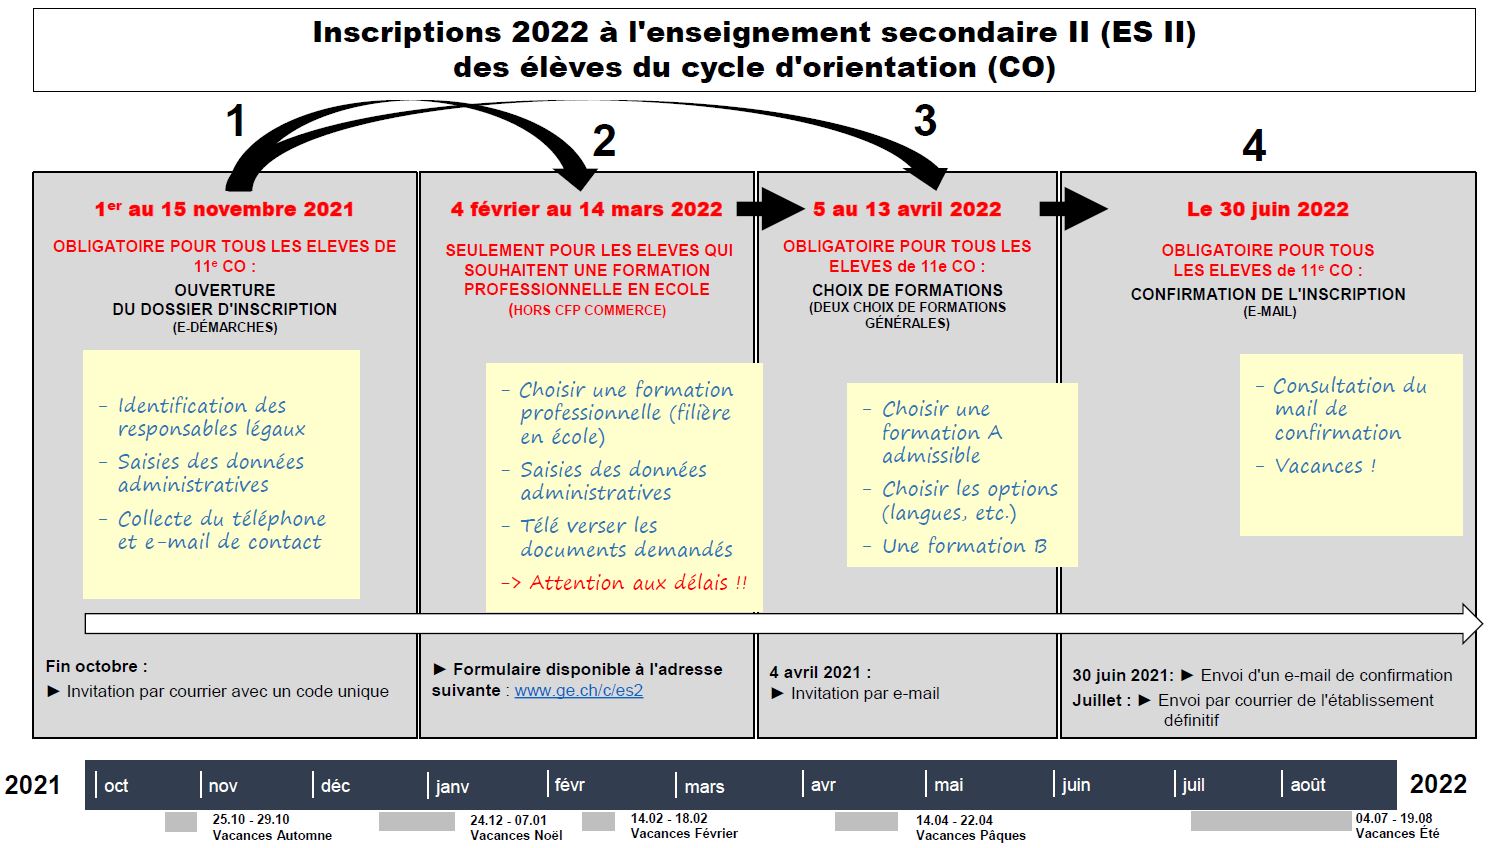 Calendrier du processus d'inscription - R22 - pour les élèves du CO 11e